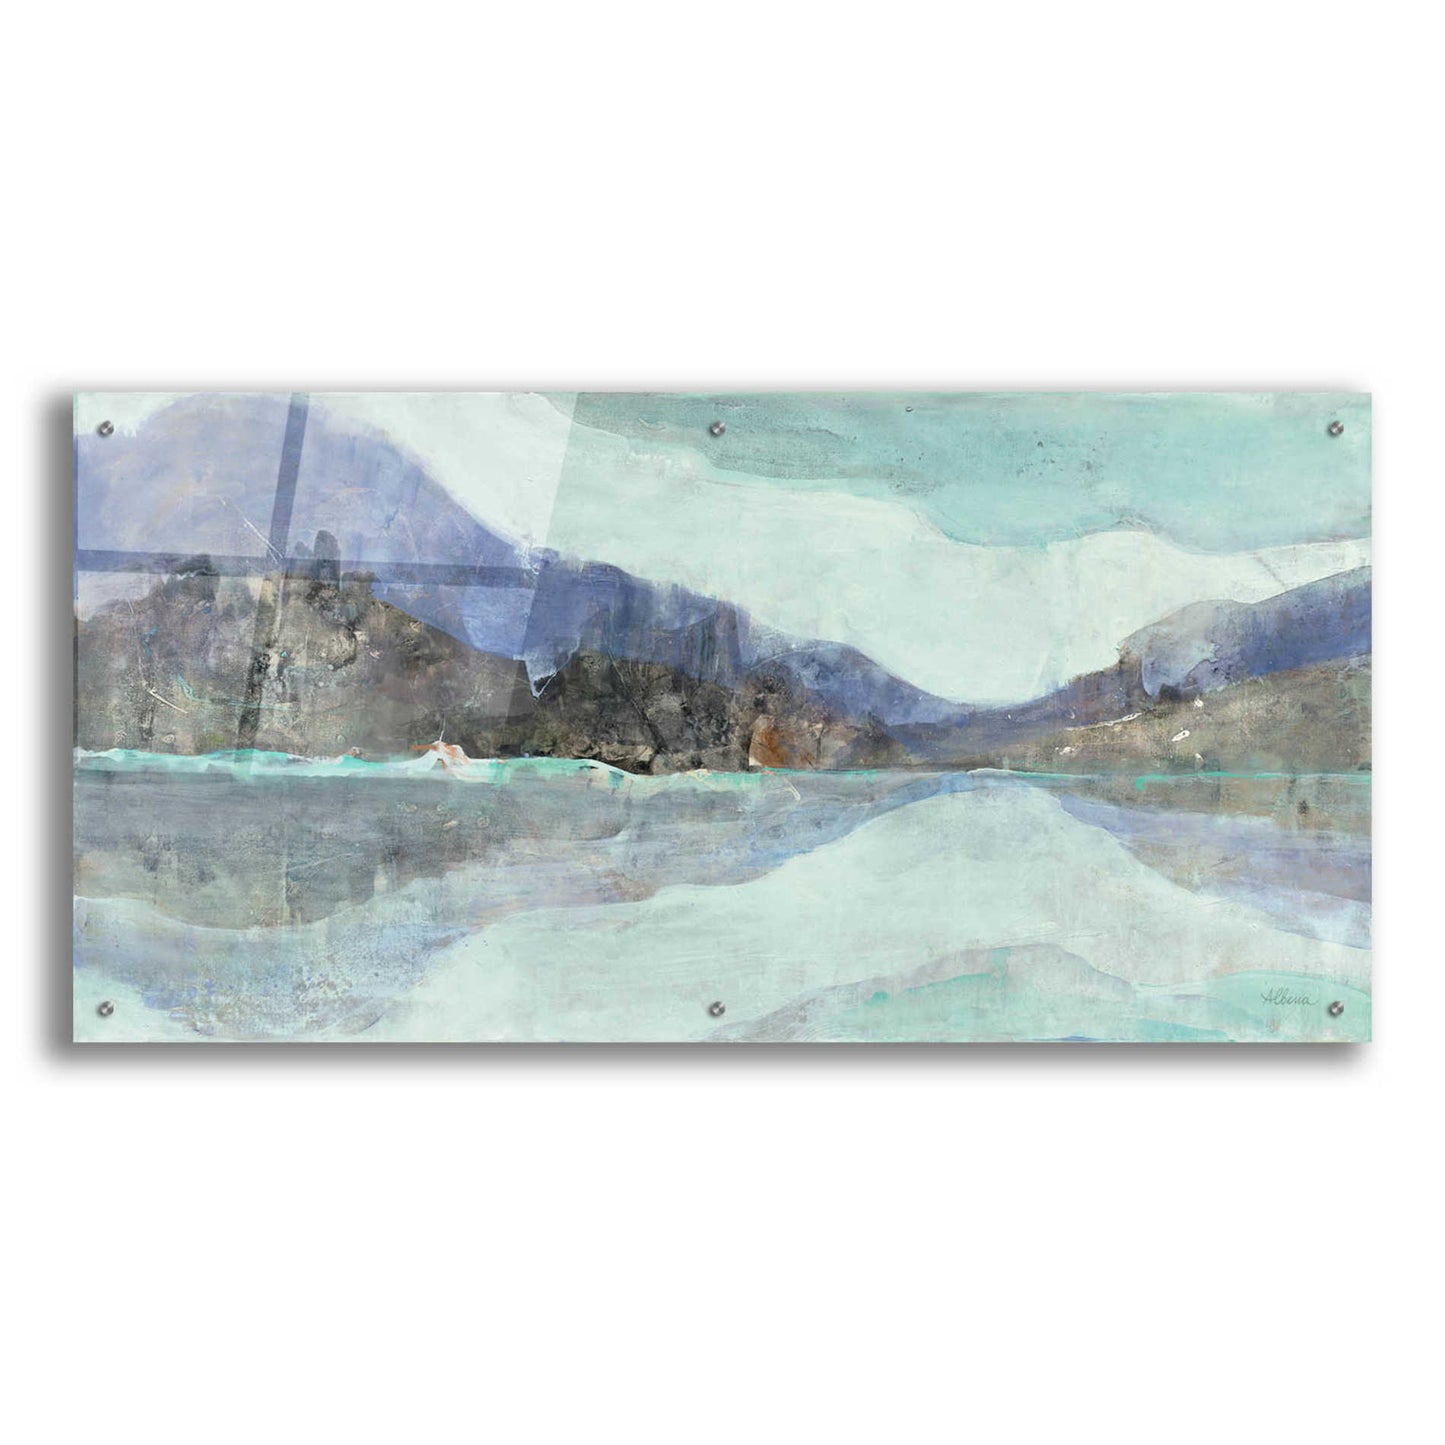 Epic Art 'Winter Landscape' by Albena Hristova, Acrylic Glass Wall Art,48x24